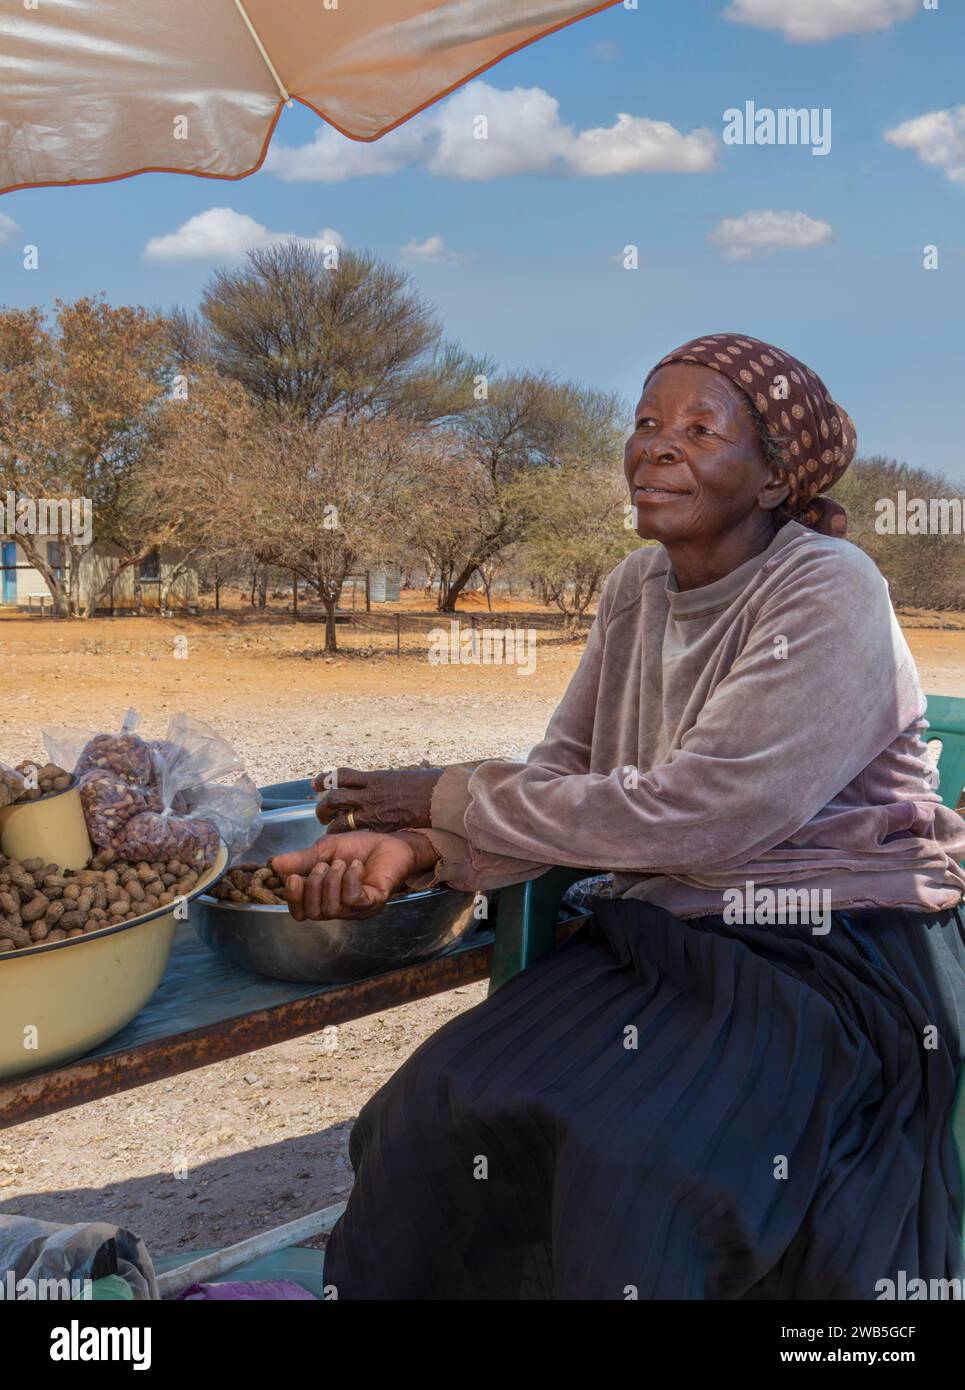 vendeur de rue africain vendant des cacahuètes, vieille femme entrepreneure à une intersection Banque D'Images